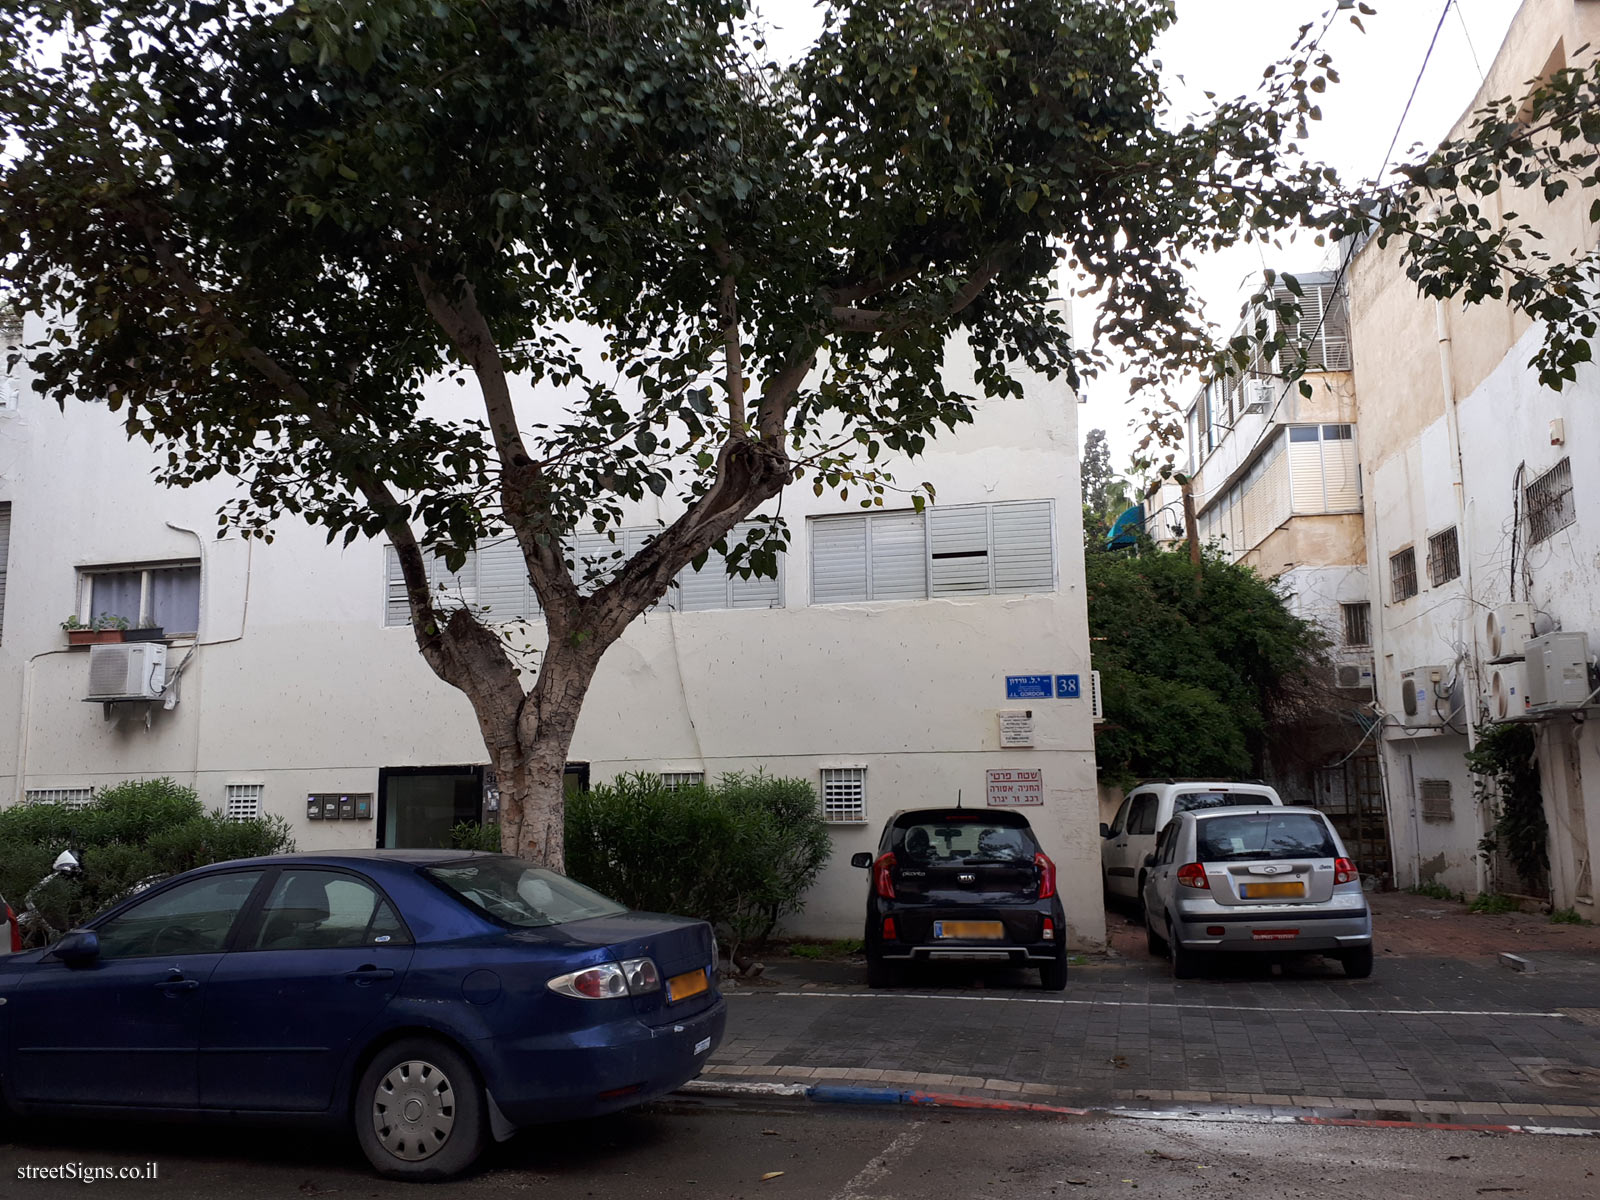 The house of Zvi Ben-Chaim - J. L. Gordon St 38, Tel Aviv-Yafo, Israel